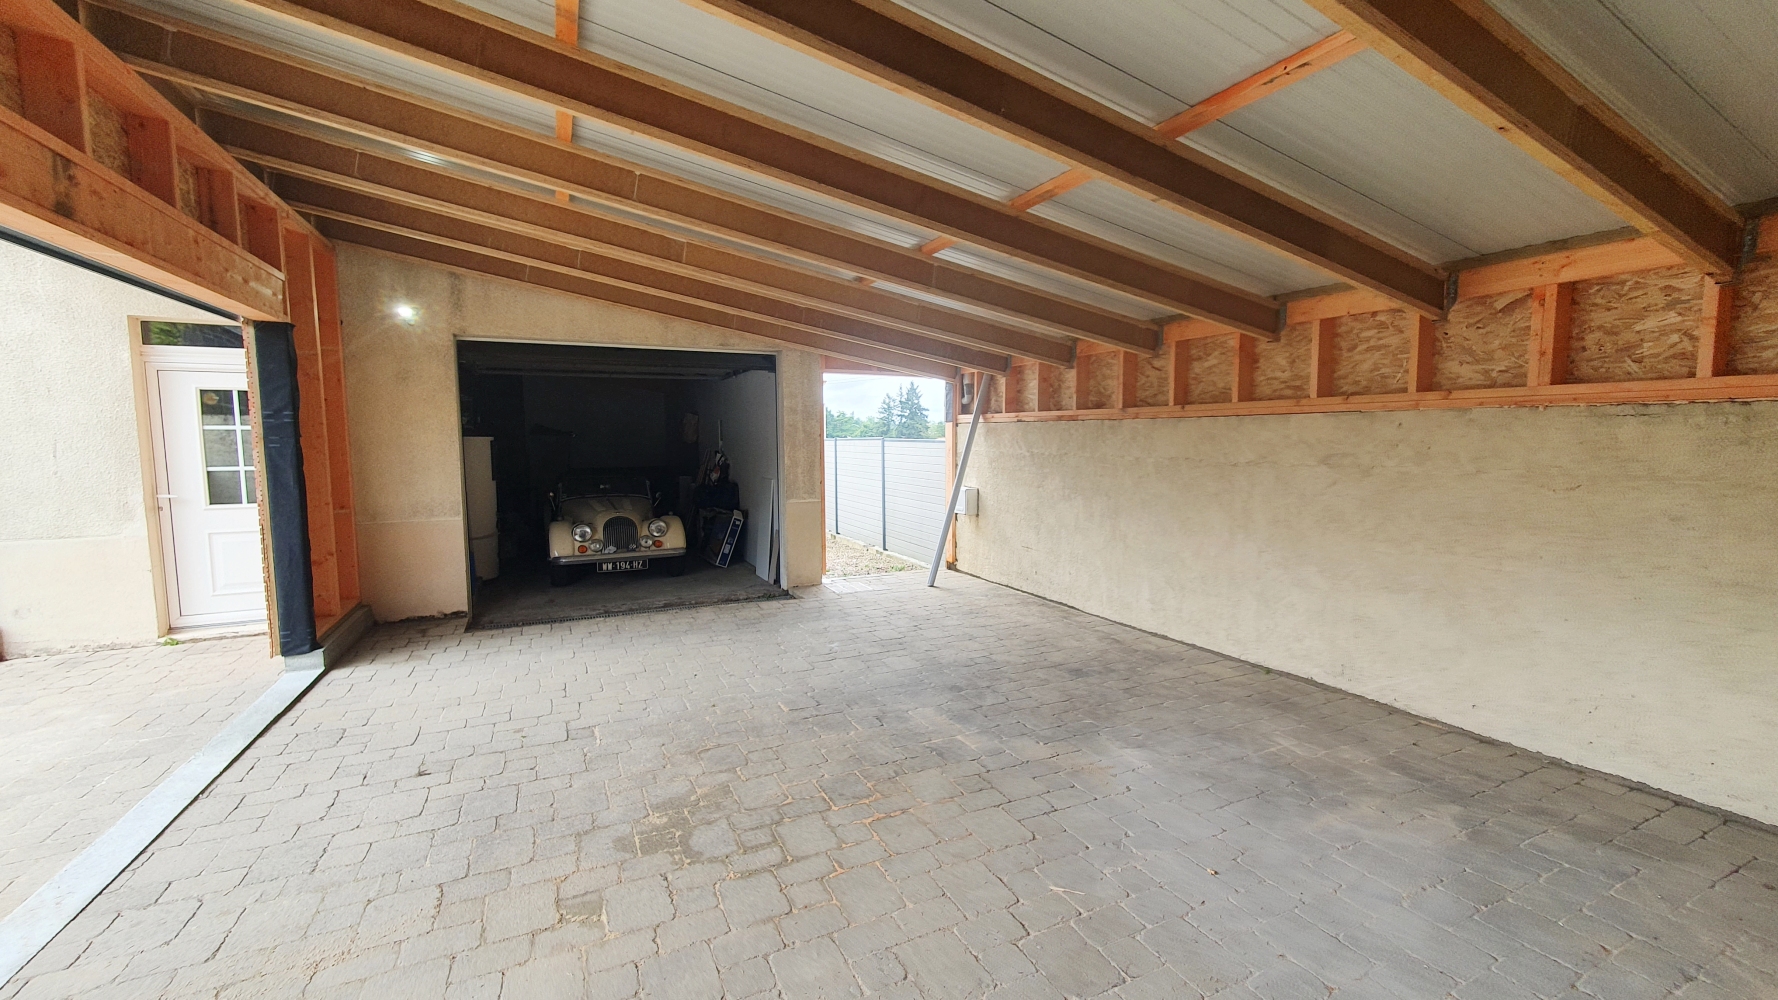 Création d'une extension garage à Vertou (44) - Vue 3